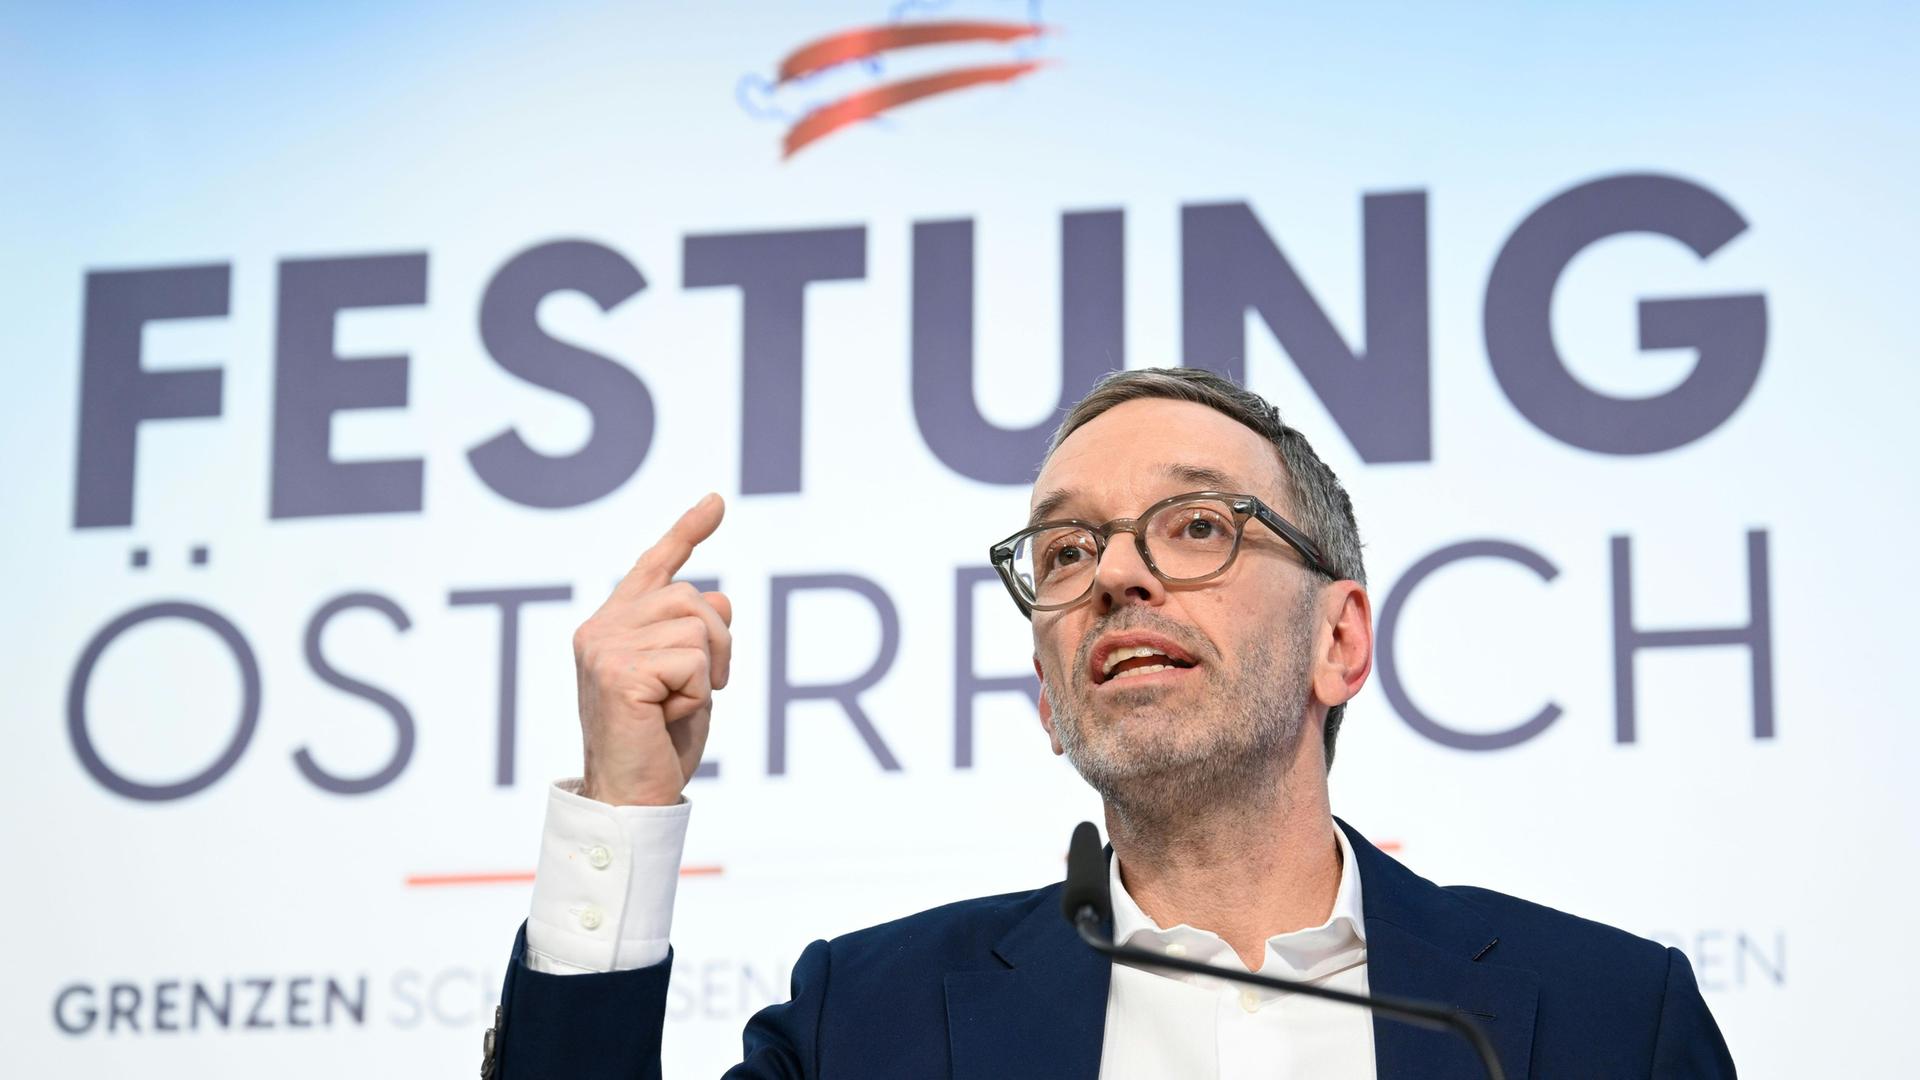 Der Vorsitzende der österreichischen Parte FPÖ, Herbert Kickl, mit erhobenem Zeigefinger vor seinem Slogan "Festung Österreich" 